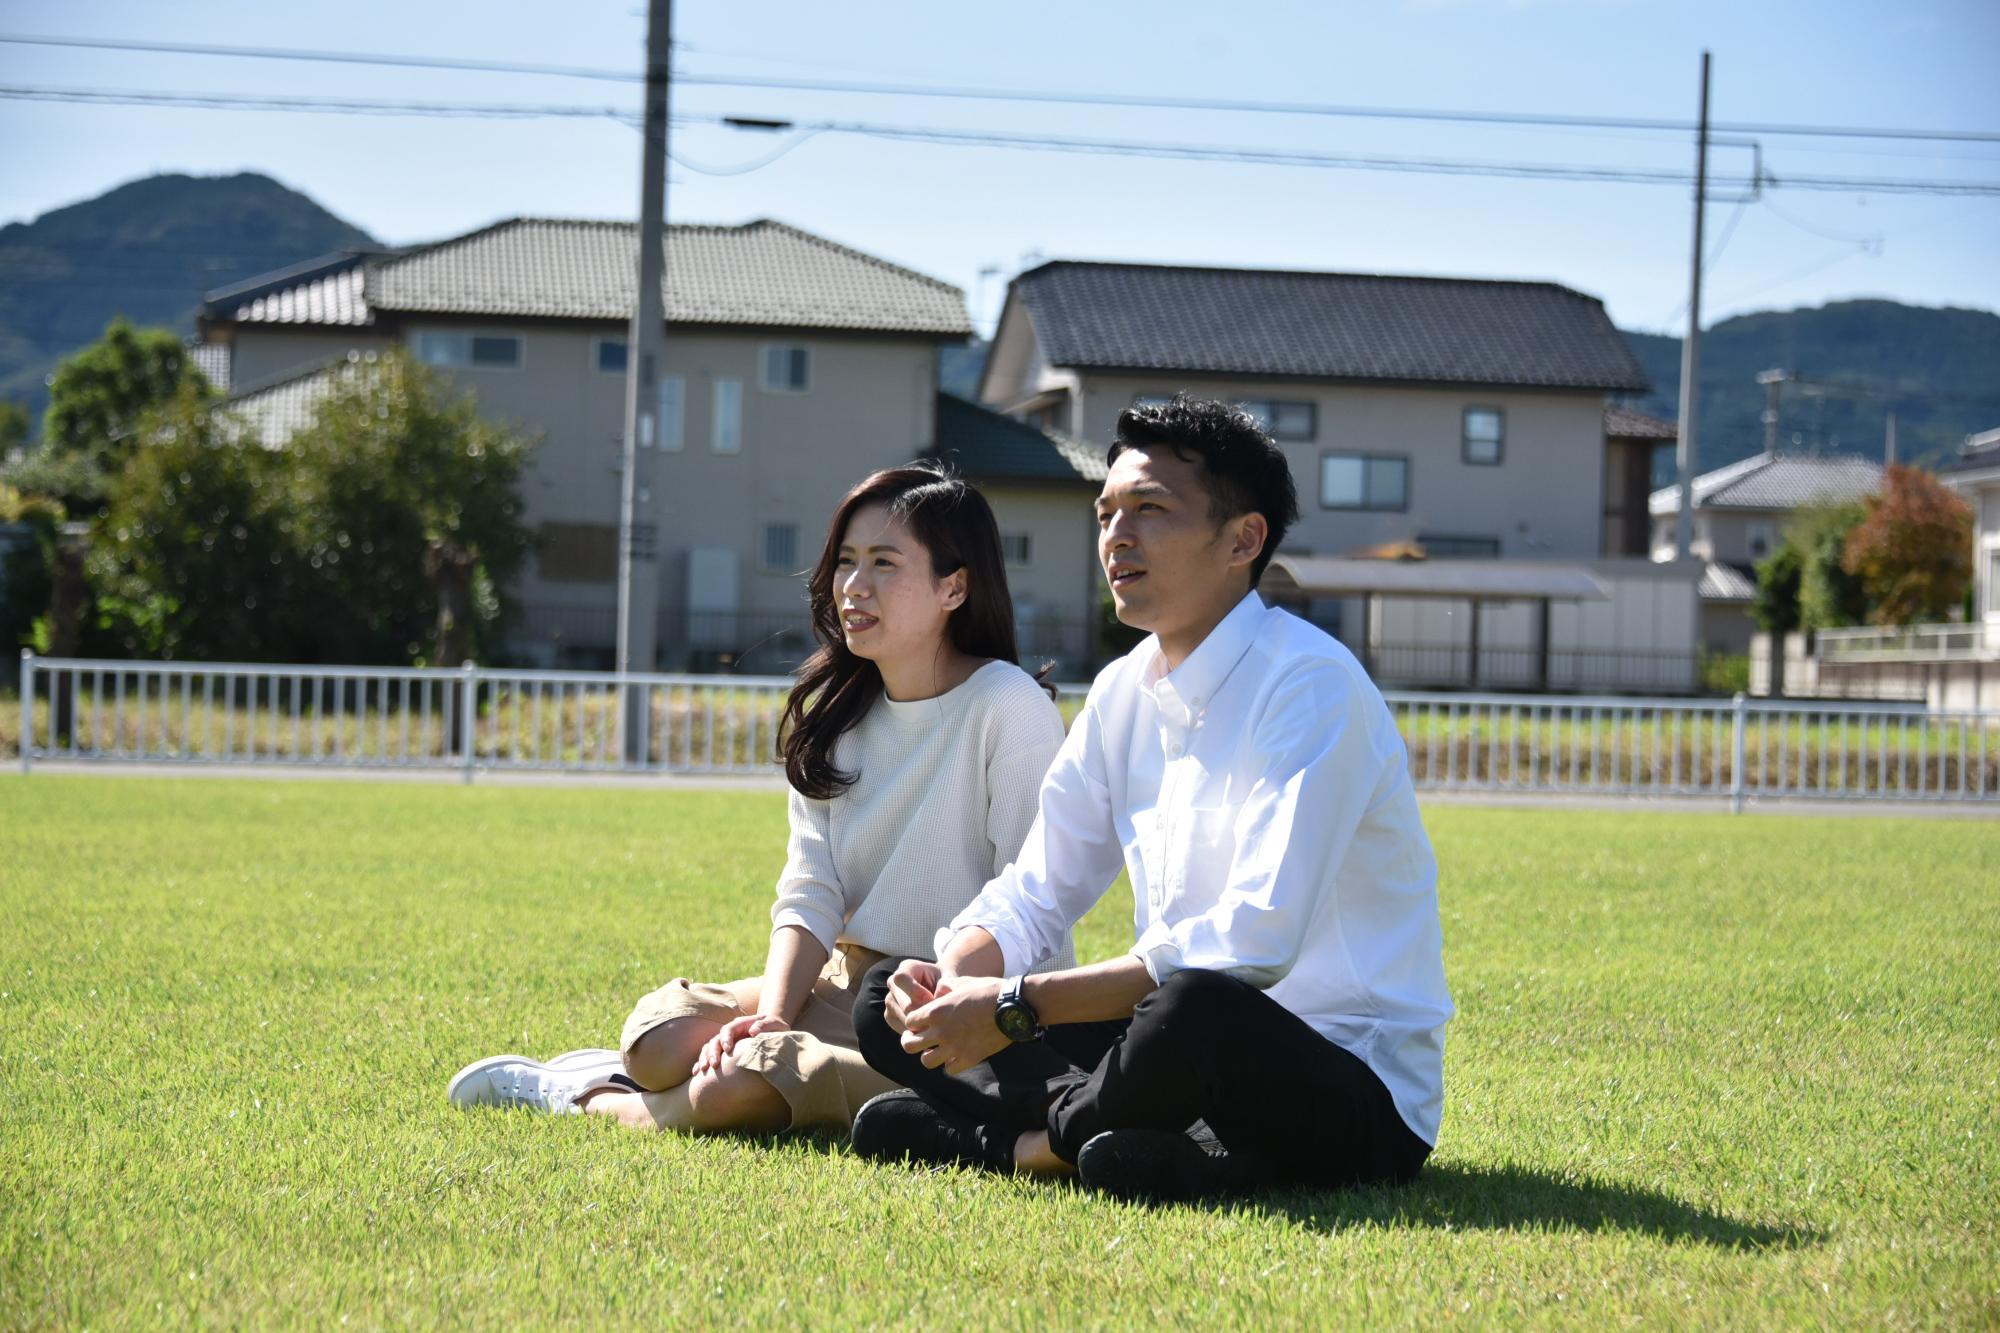 公園の芝生の上で談笑する夫婦の写真